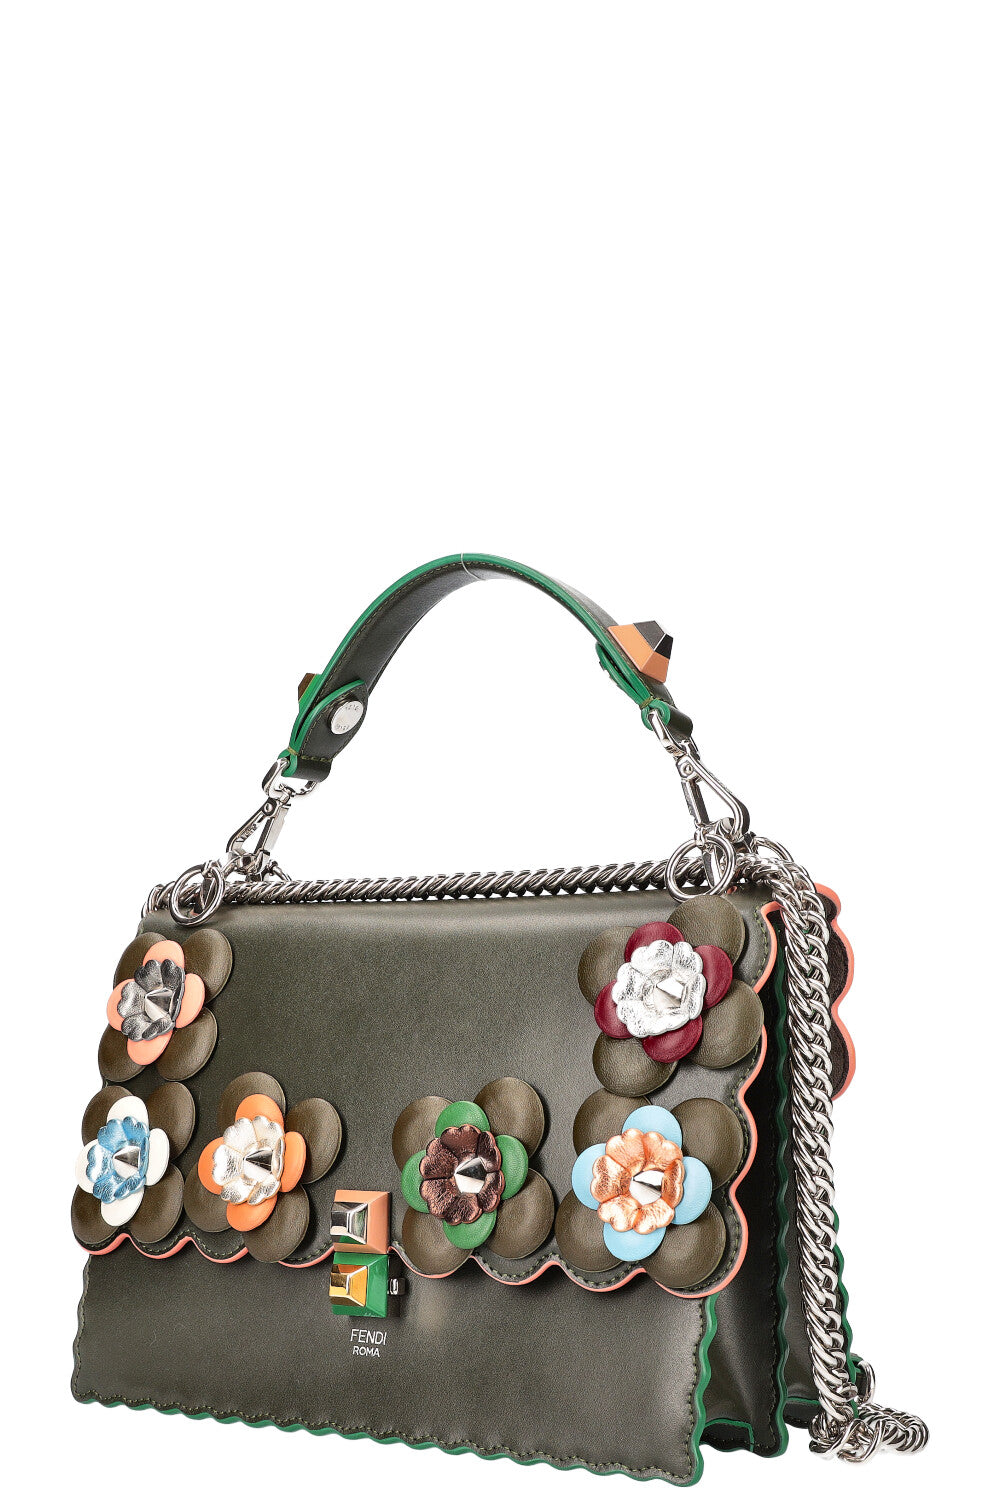 FENDI Flowerland Kan I Bag Embellished Leather Bag Green